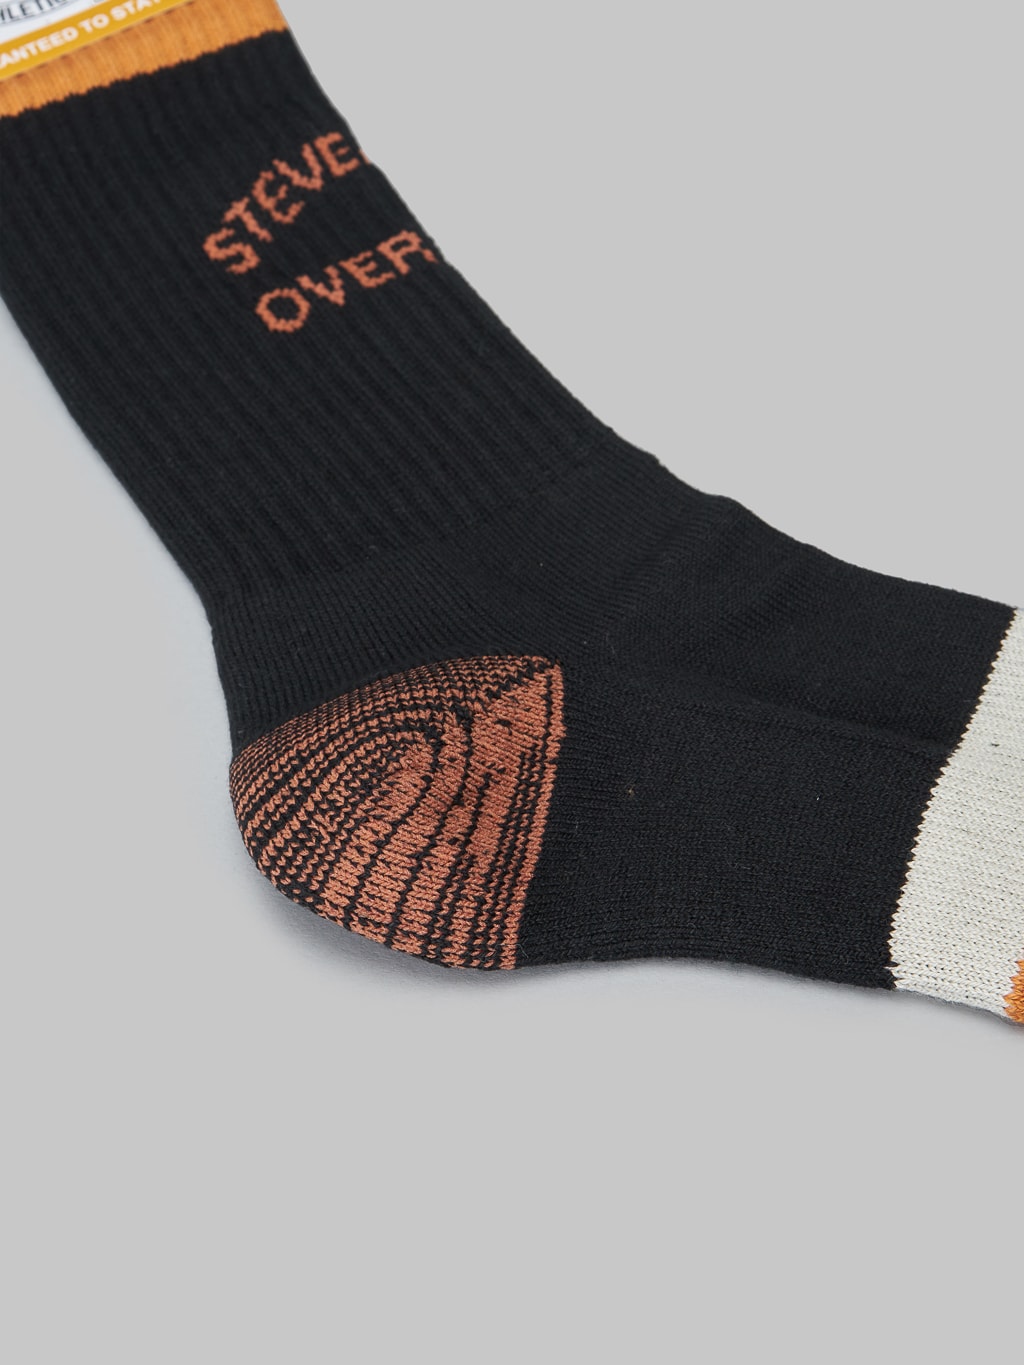 Stevenson Overall Athletic Socks black heel detail